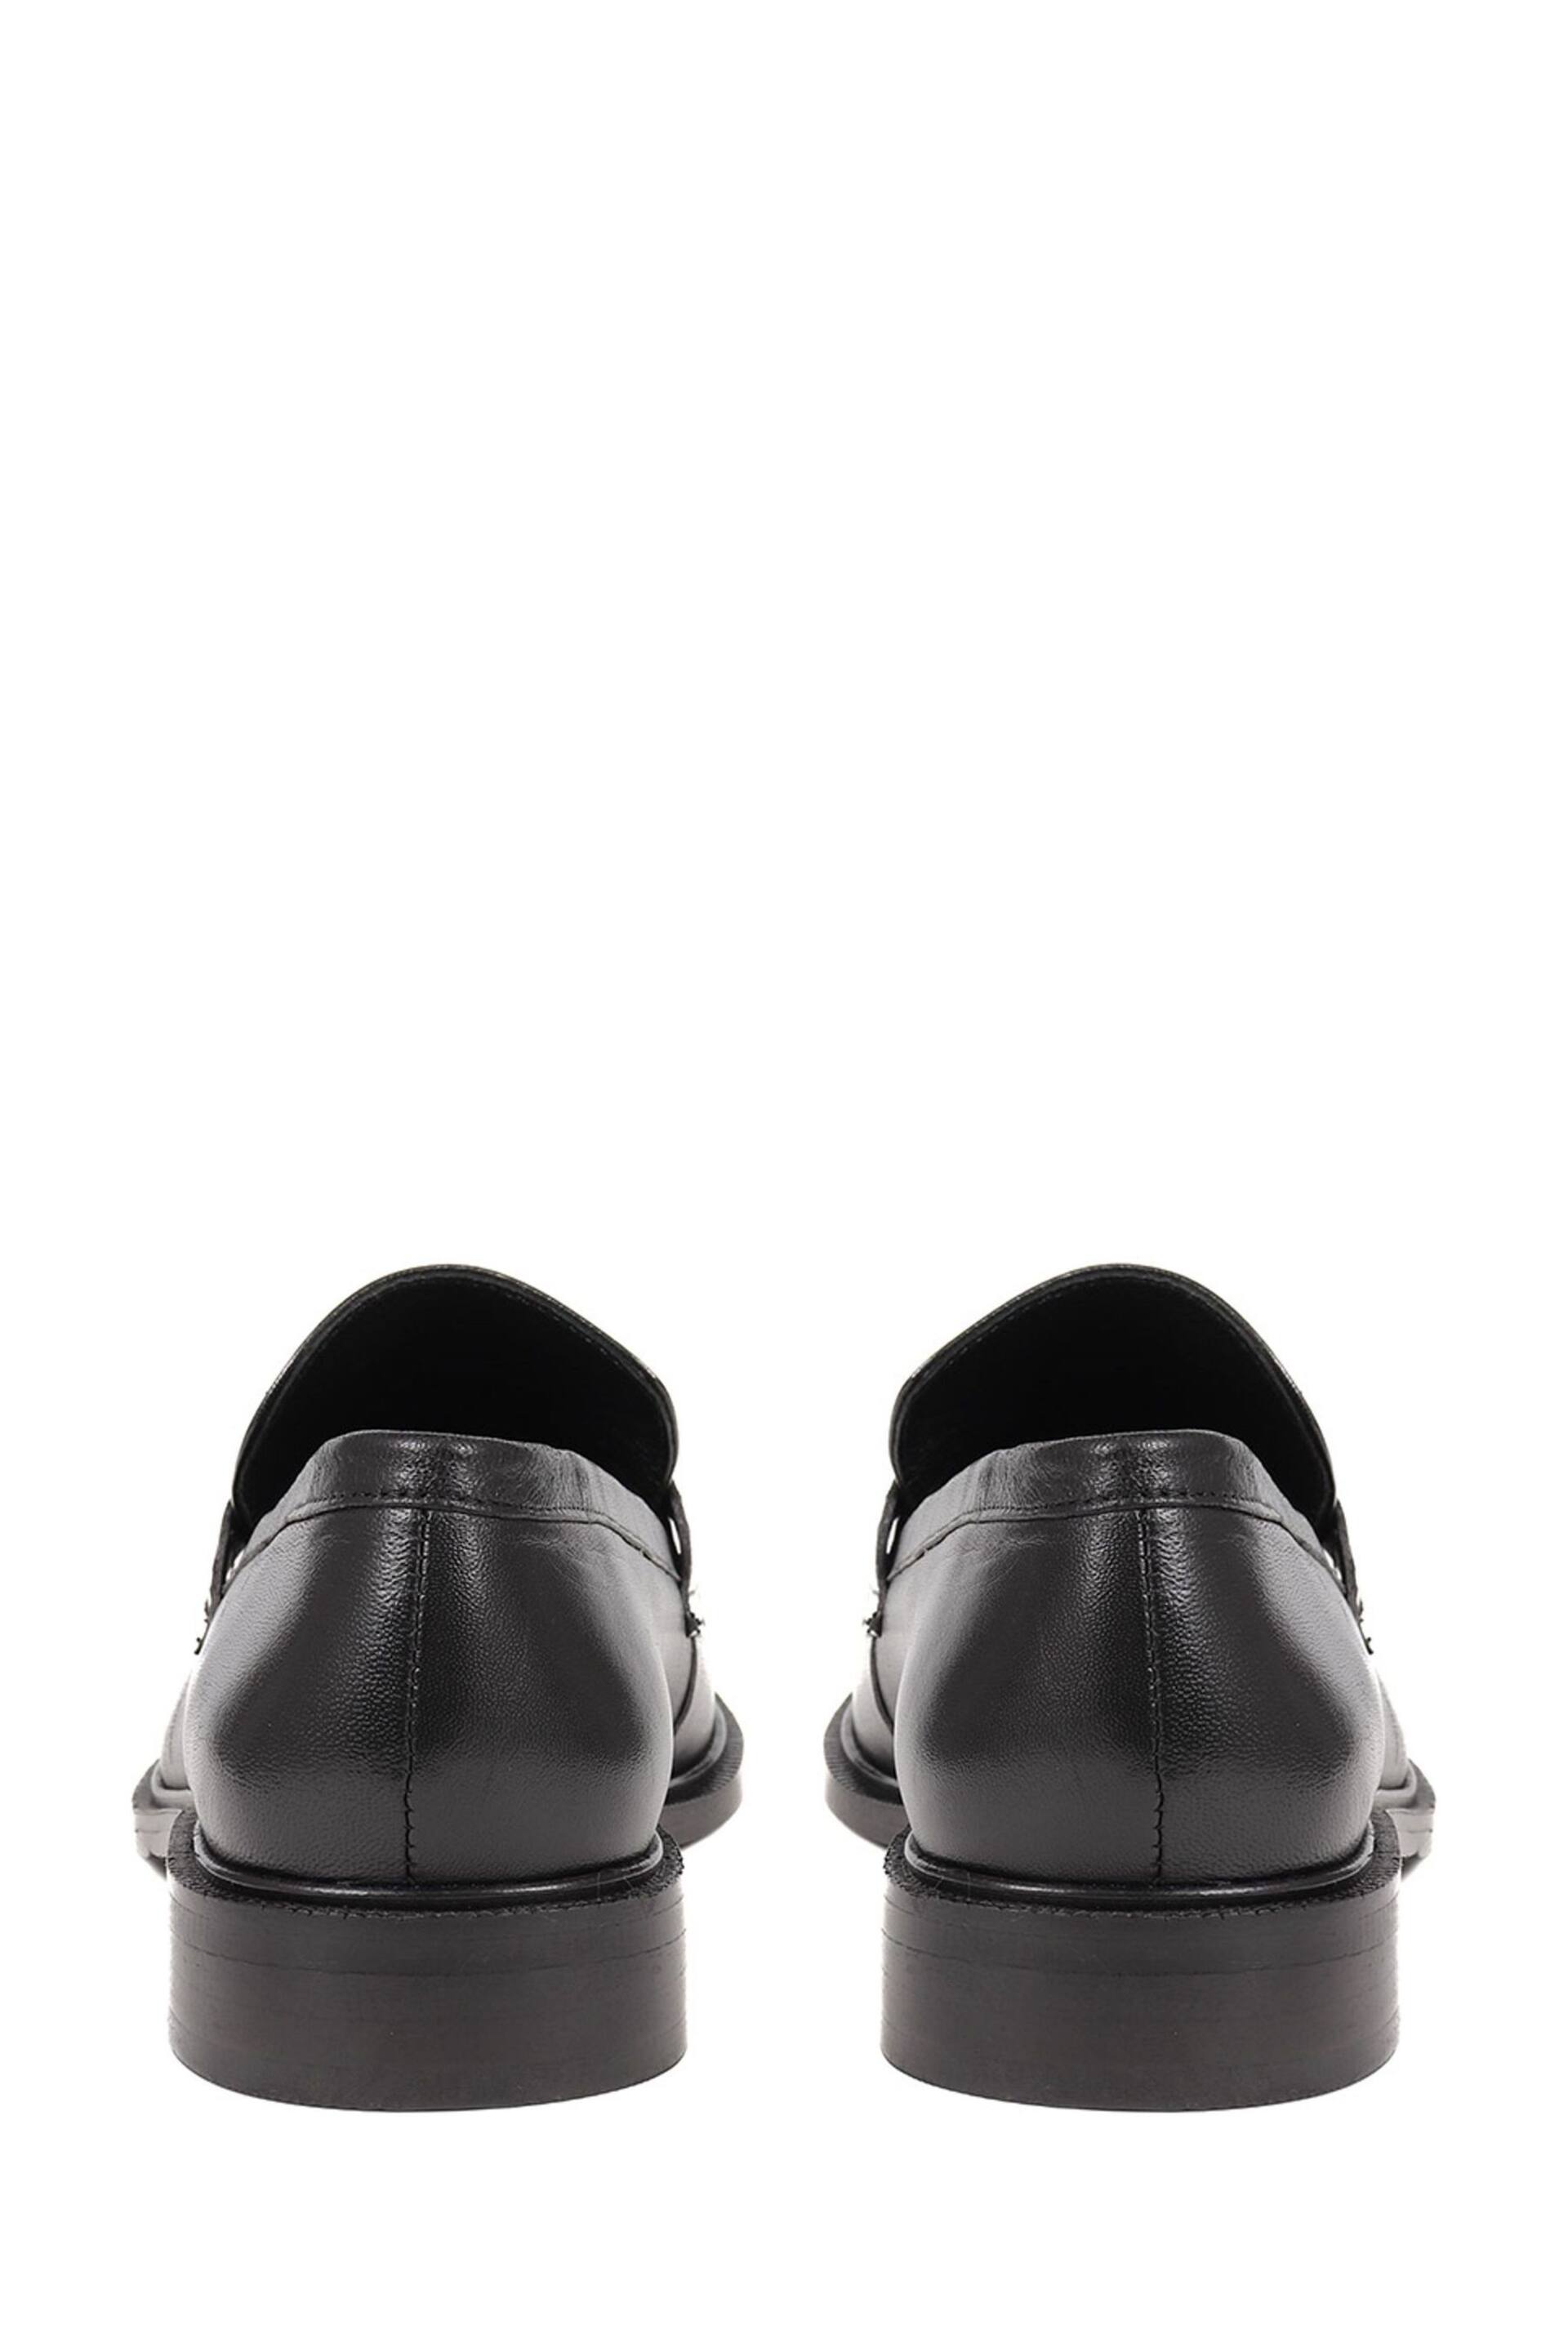 Jones Bootmaker Mari Leather Black Loafers - Image 4 of 5